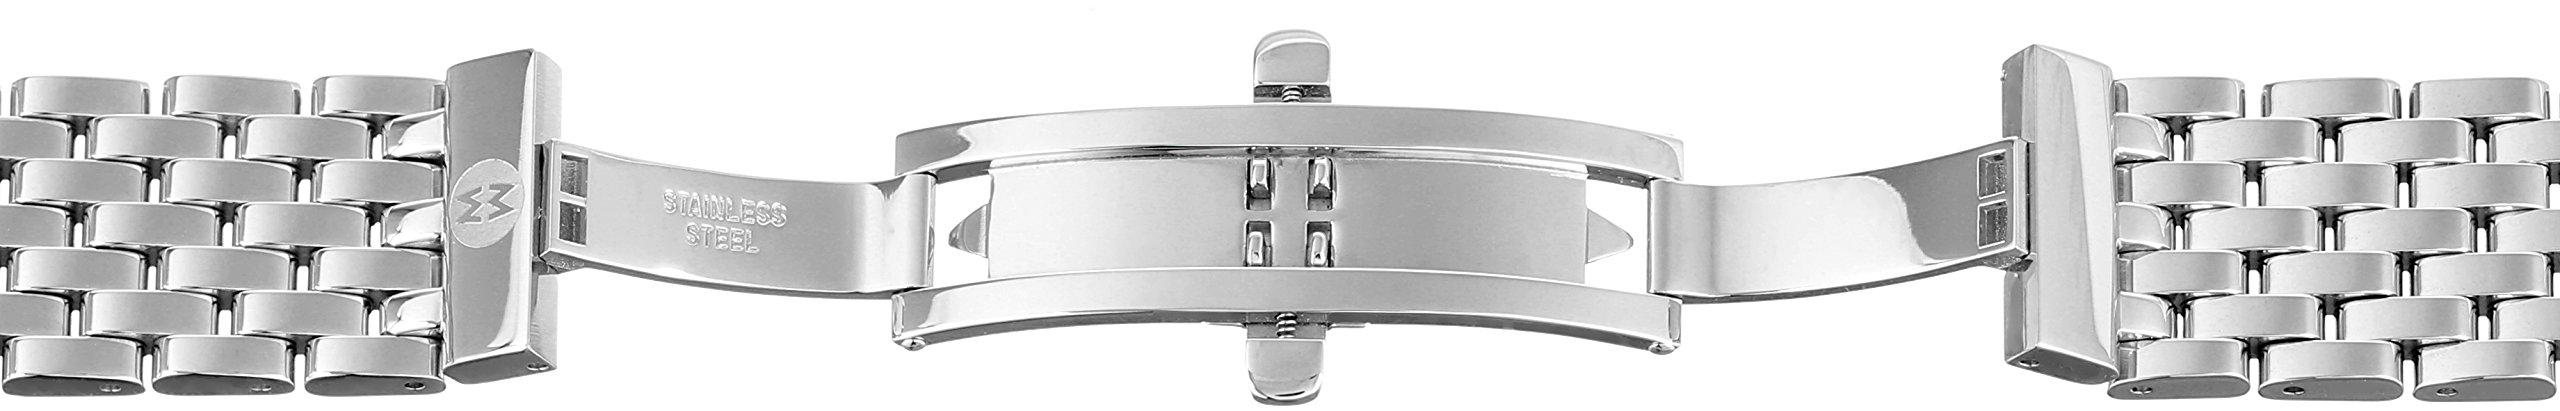 MICHELE MS16FK235009 Serein 16mm Diamond & Stainless Steel Two Tone Watch Bracelet